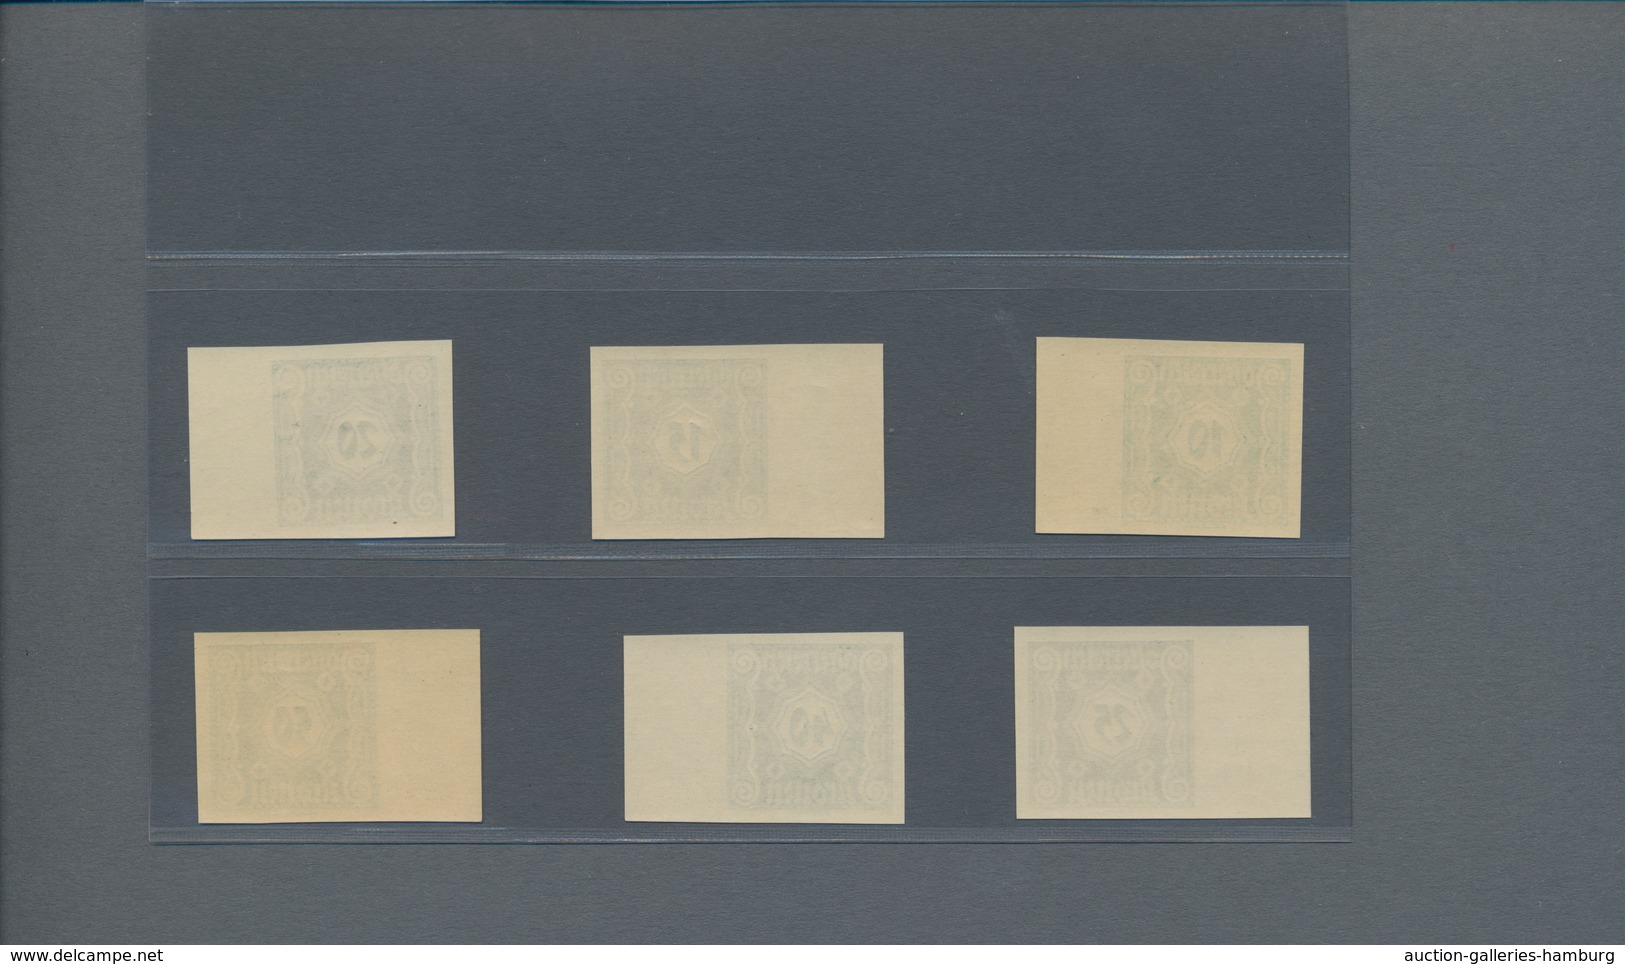 Österreich - Portomarken: 1922, Ziffern, 10 Kr. bis 50 Kr. kleines Format, sechs Werte ungezähnt vom